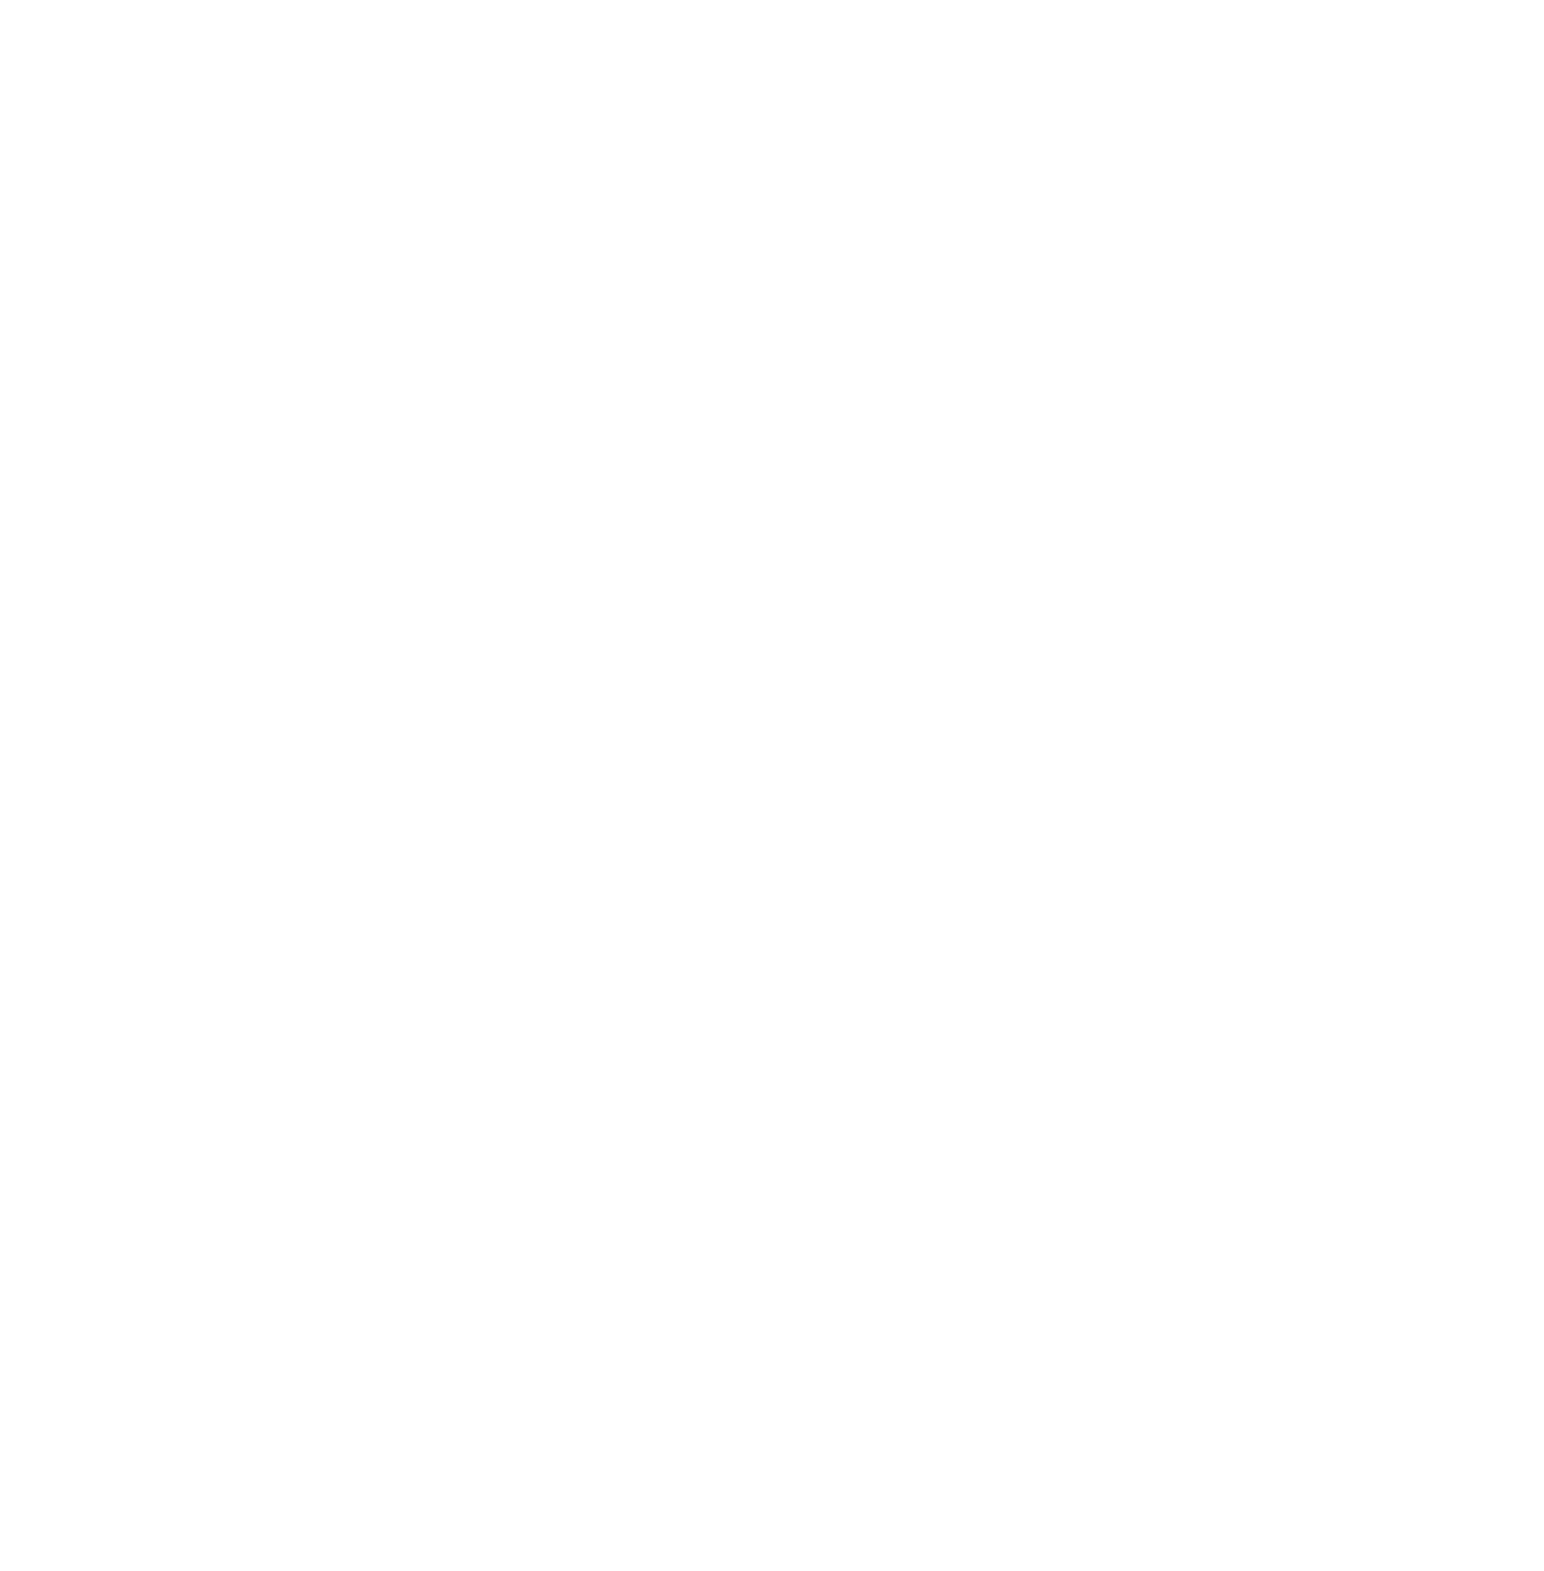 Essity logo pour fonds sombres (PNG transparent)